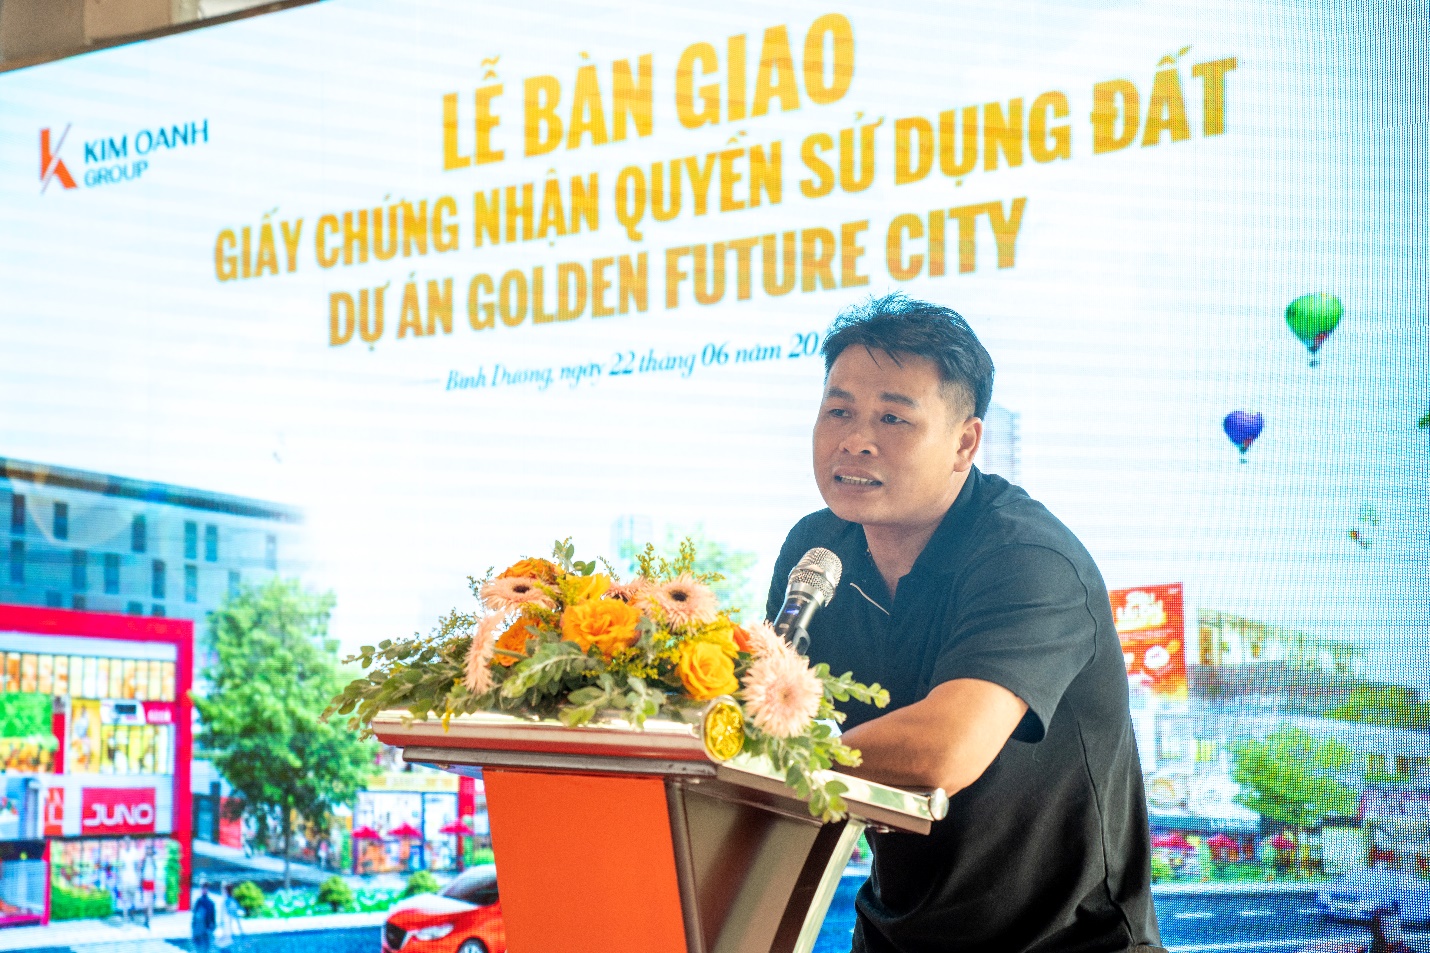 Bình Dương: Kim Oanh Group bàn giao giấy chứng nhận quyền sử dụng đất dự án Golden Future City- Ảnh 3.